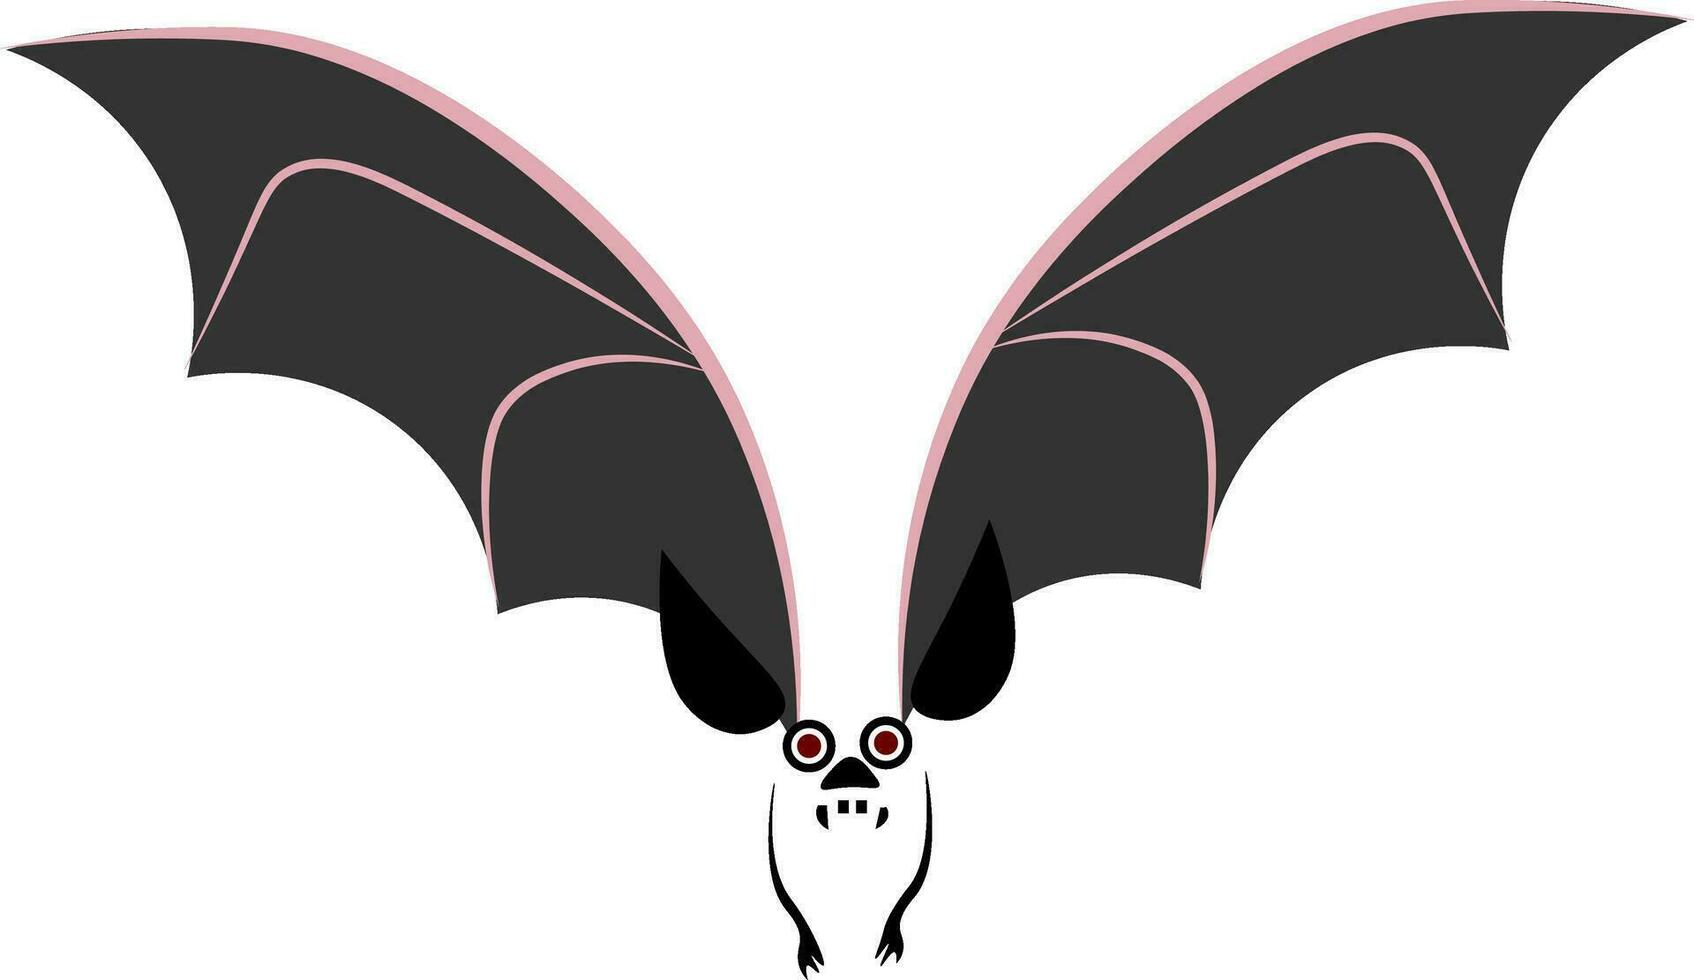 Staring bat vector or color illustration